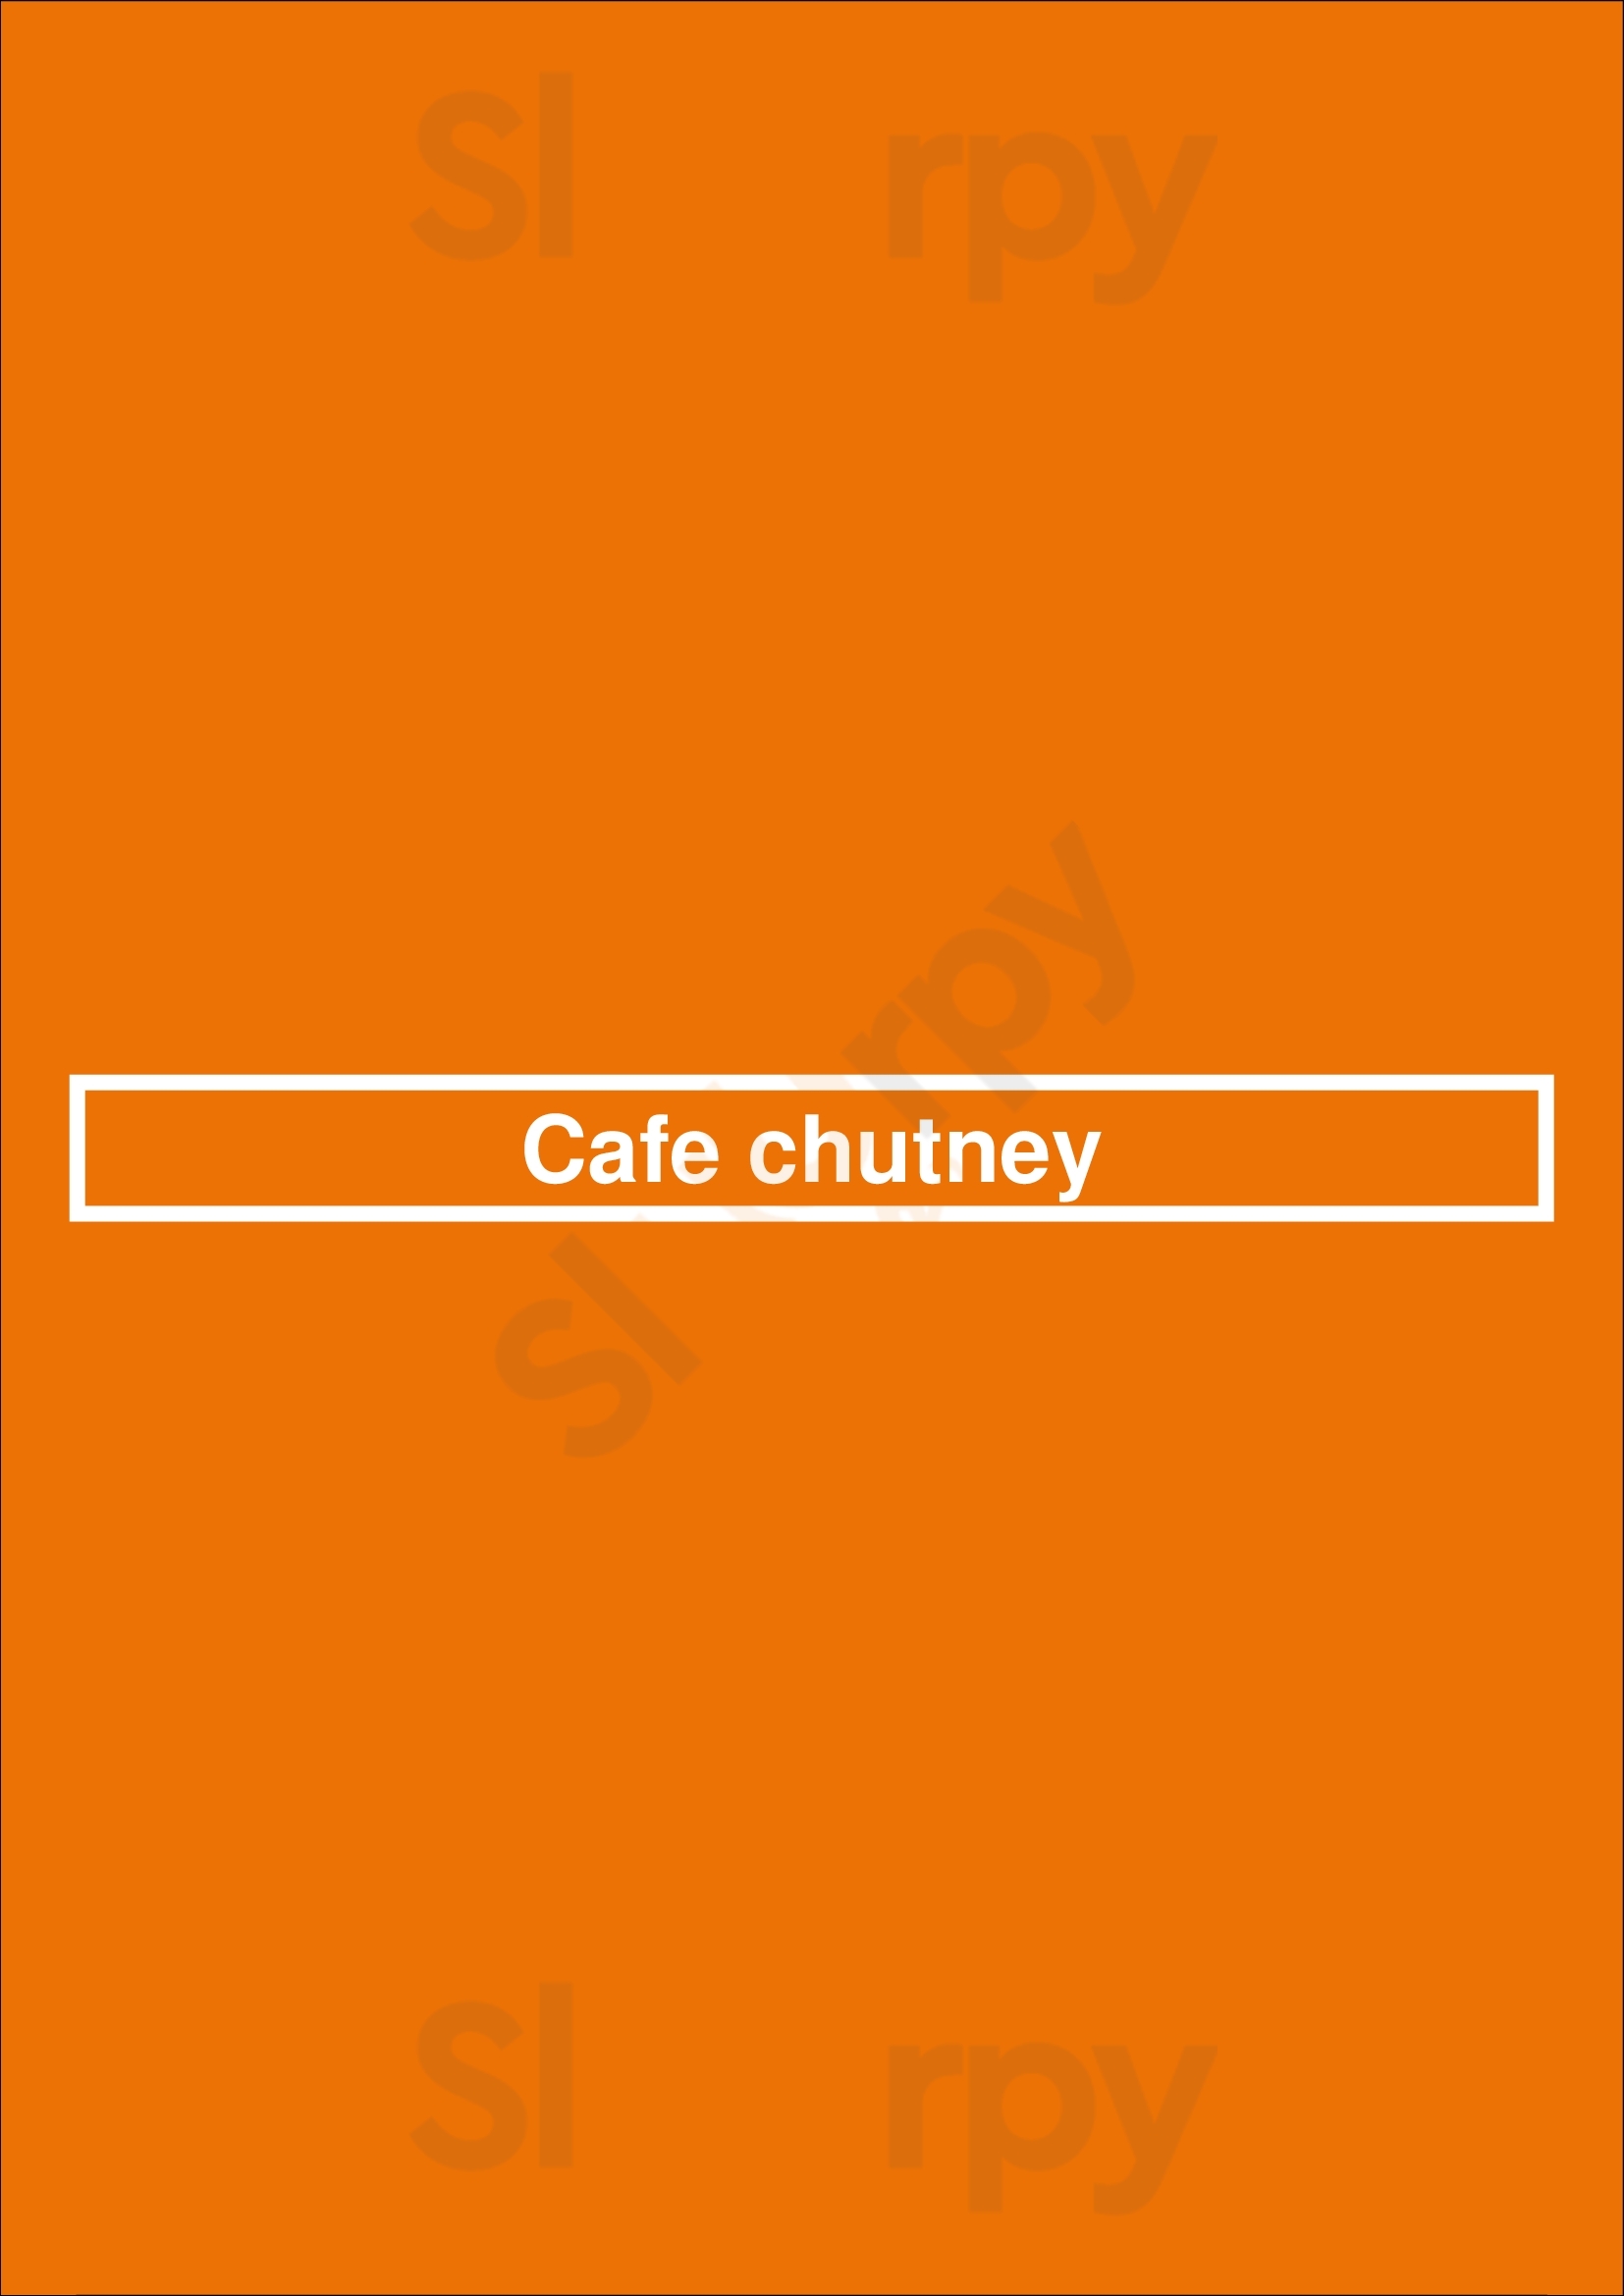 Cafe Chutney Coalville Menu - 1